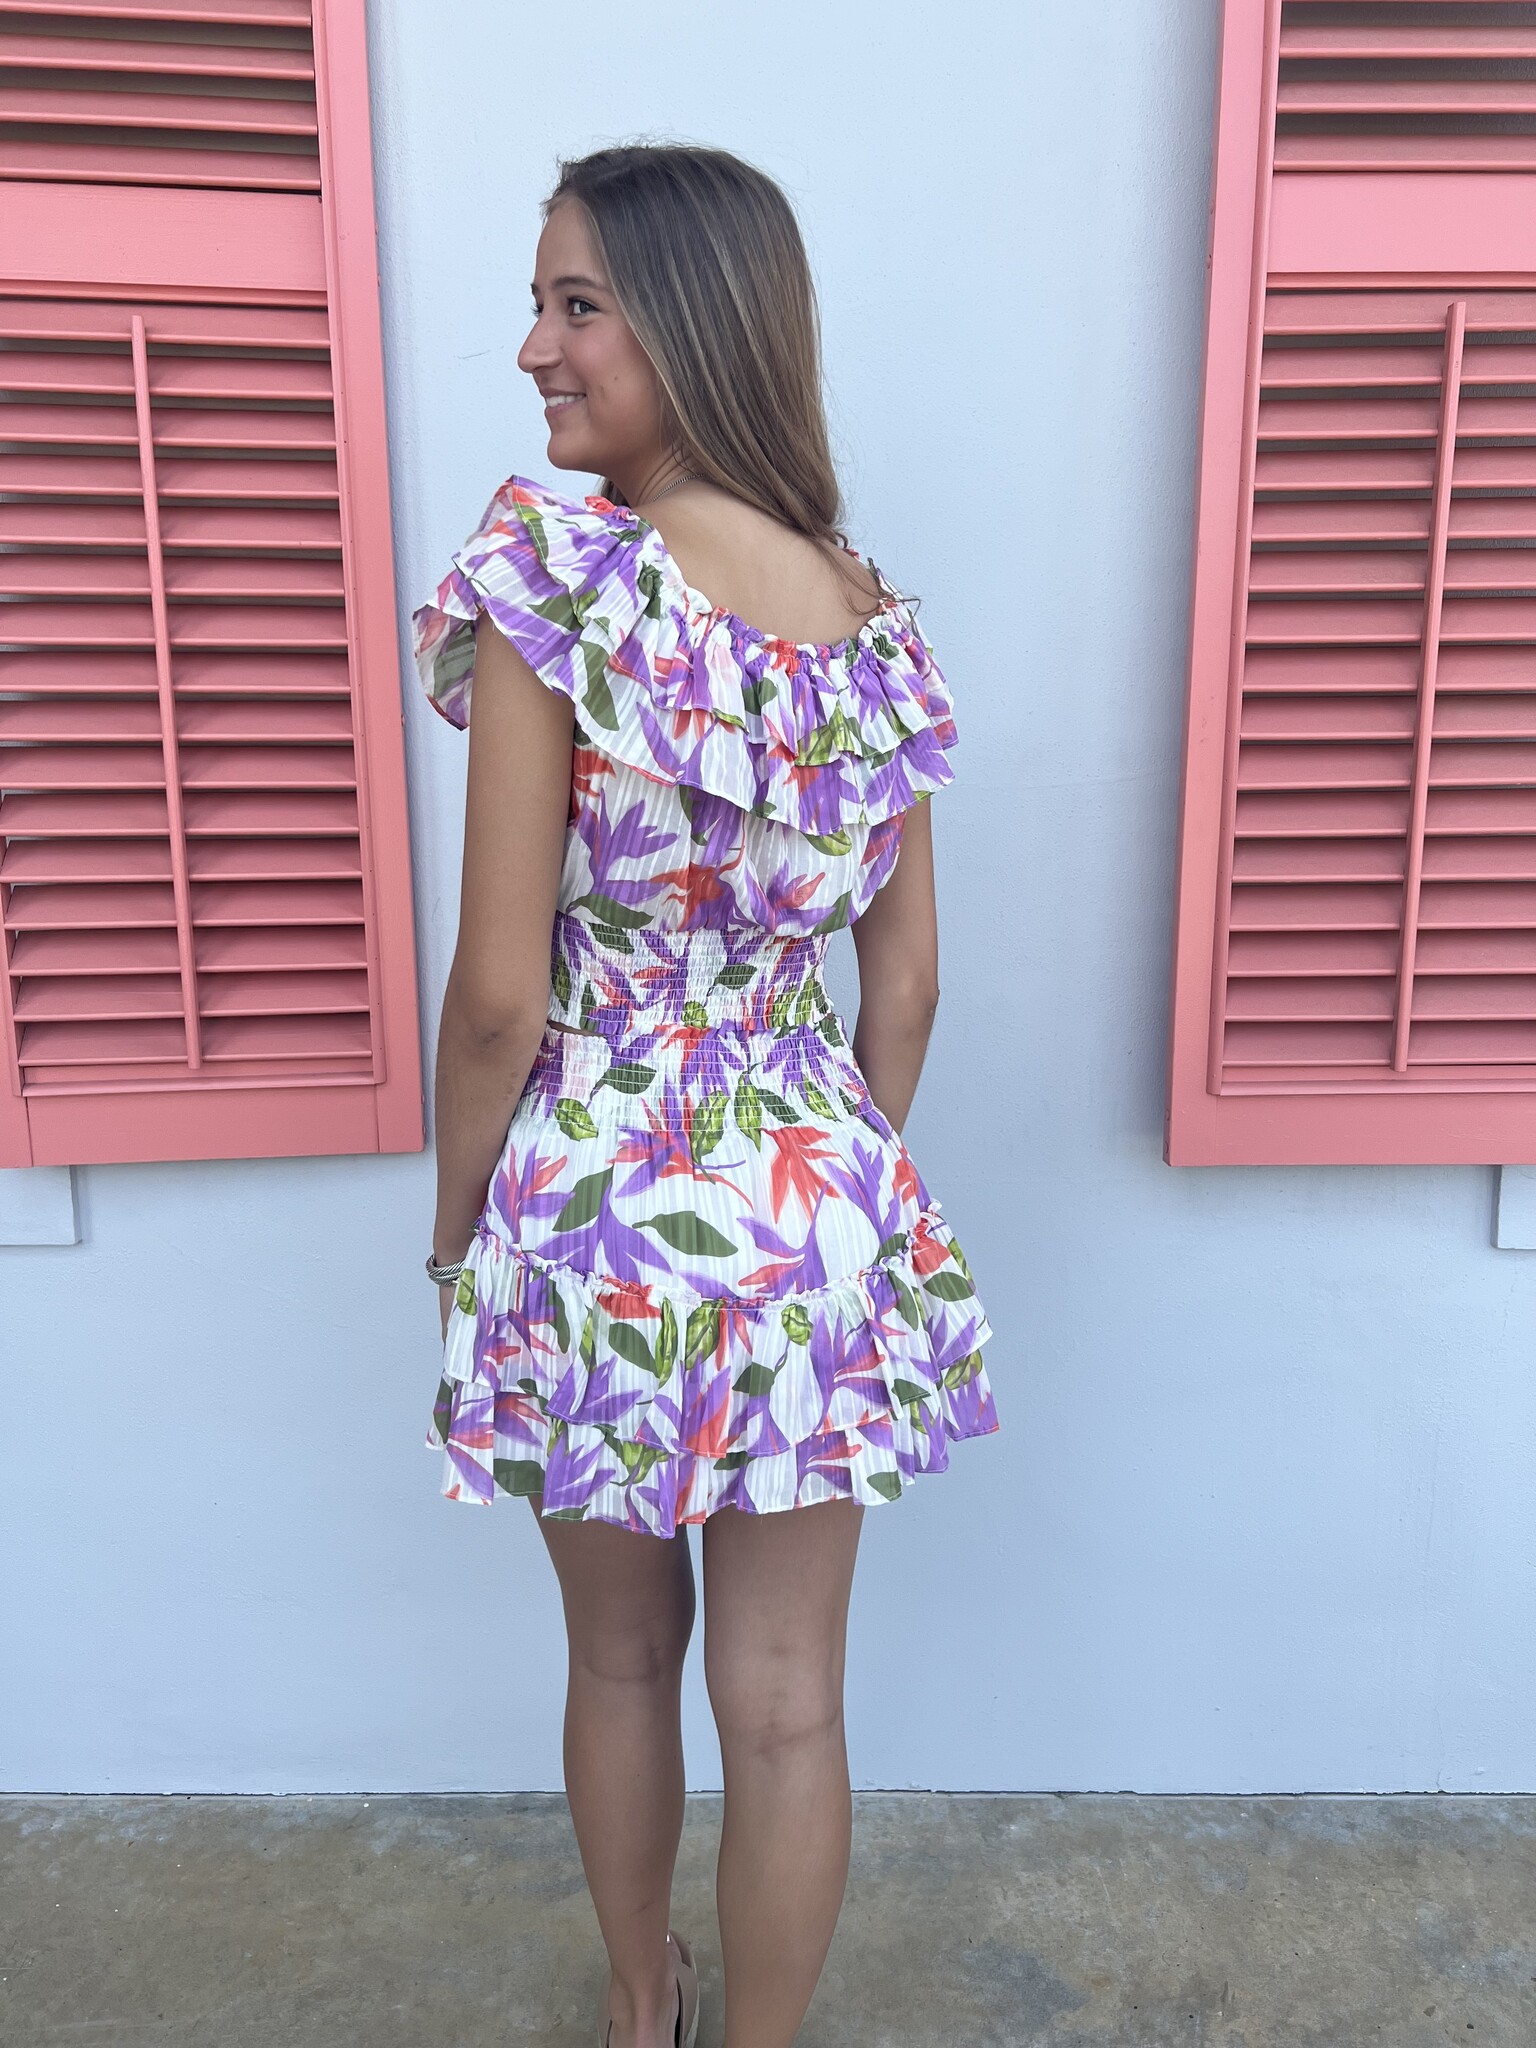 So mini reasons you need this skirt 🖤 @Thaylise Ferreira Wearing ROXY... |  TikTok